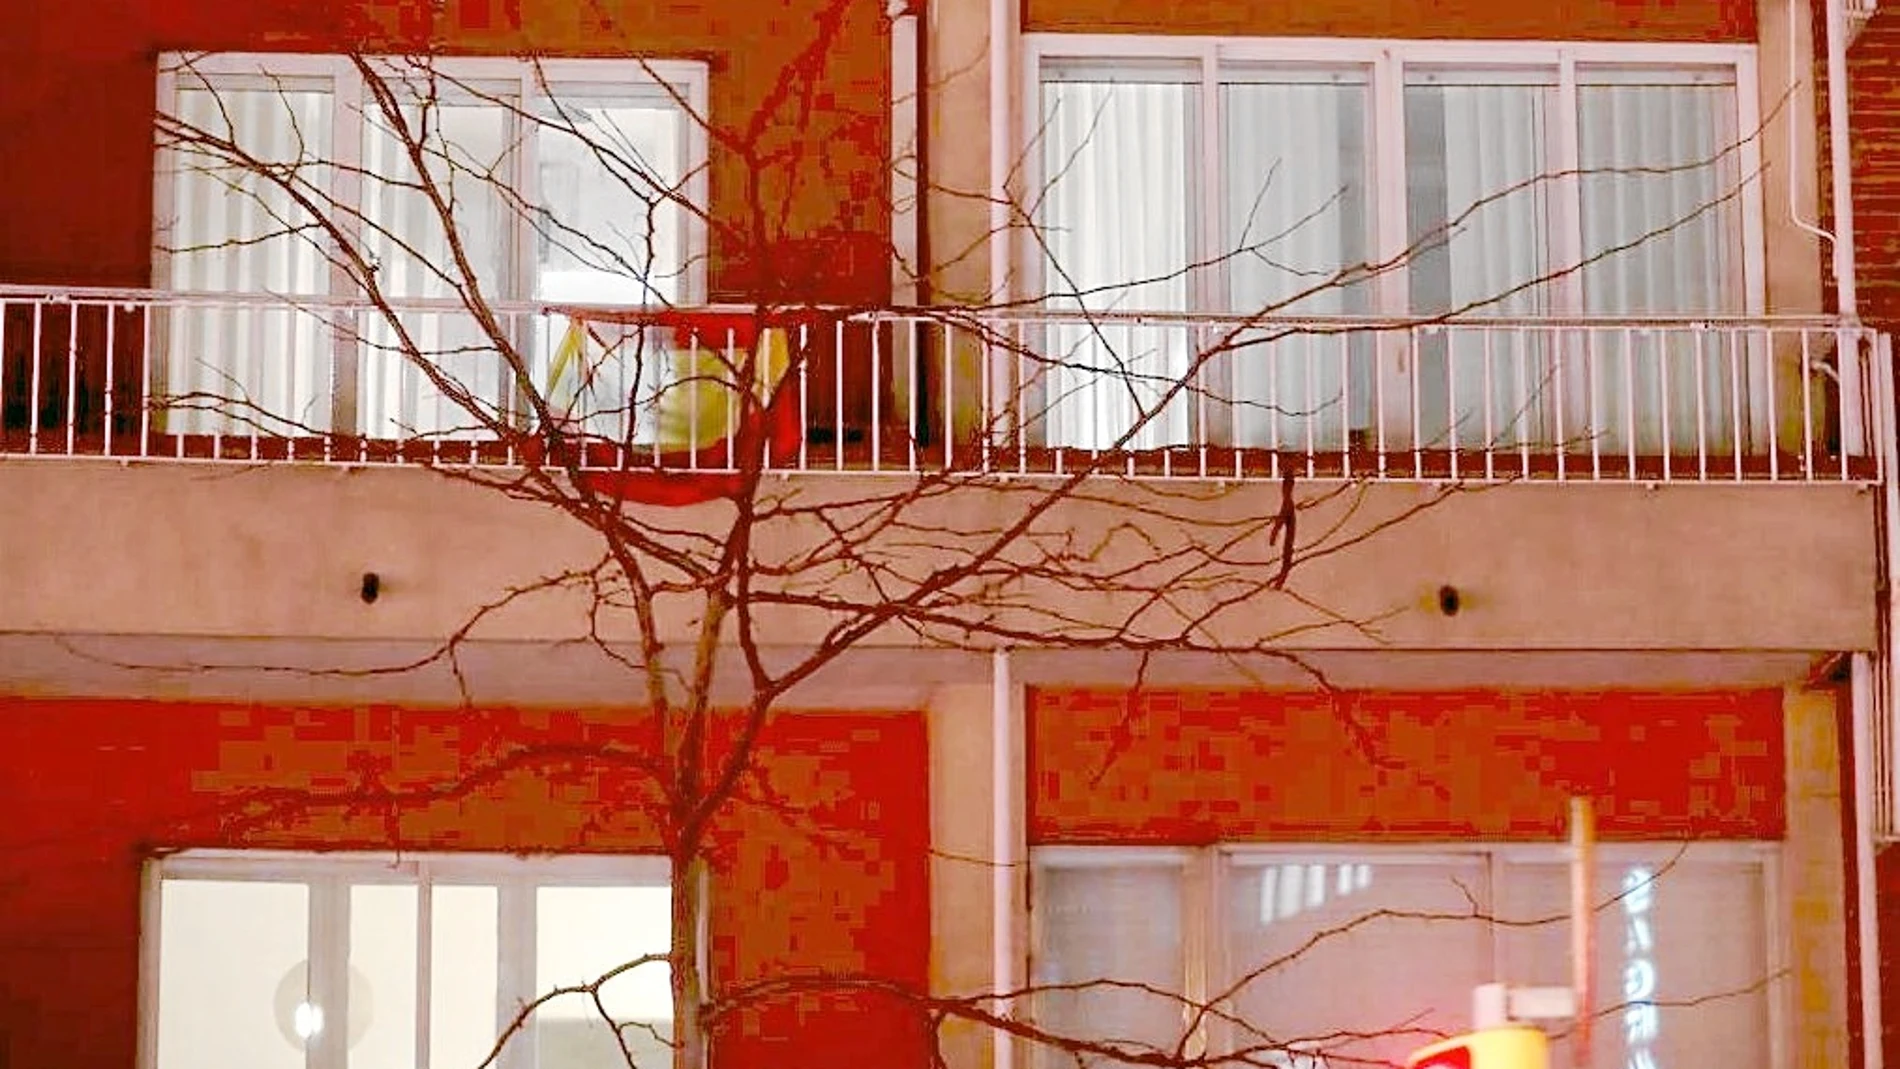 Uno de los vecinos del edificio donde vive Jordi Pujol tiene una bandera de España en el balcón, como puede verse en una imagen tomada ayer